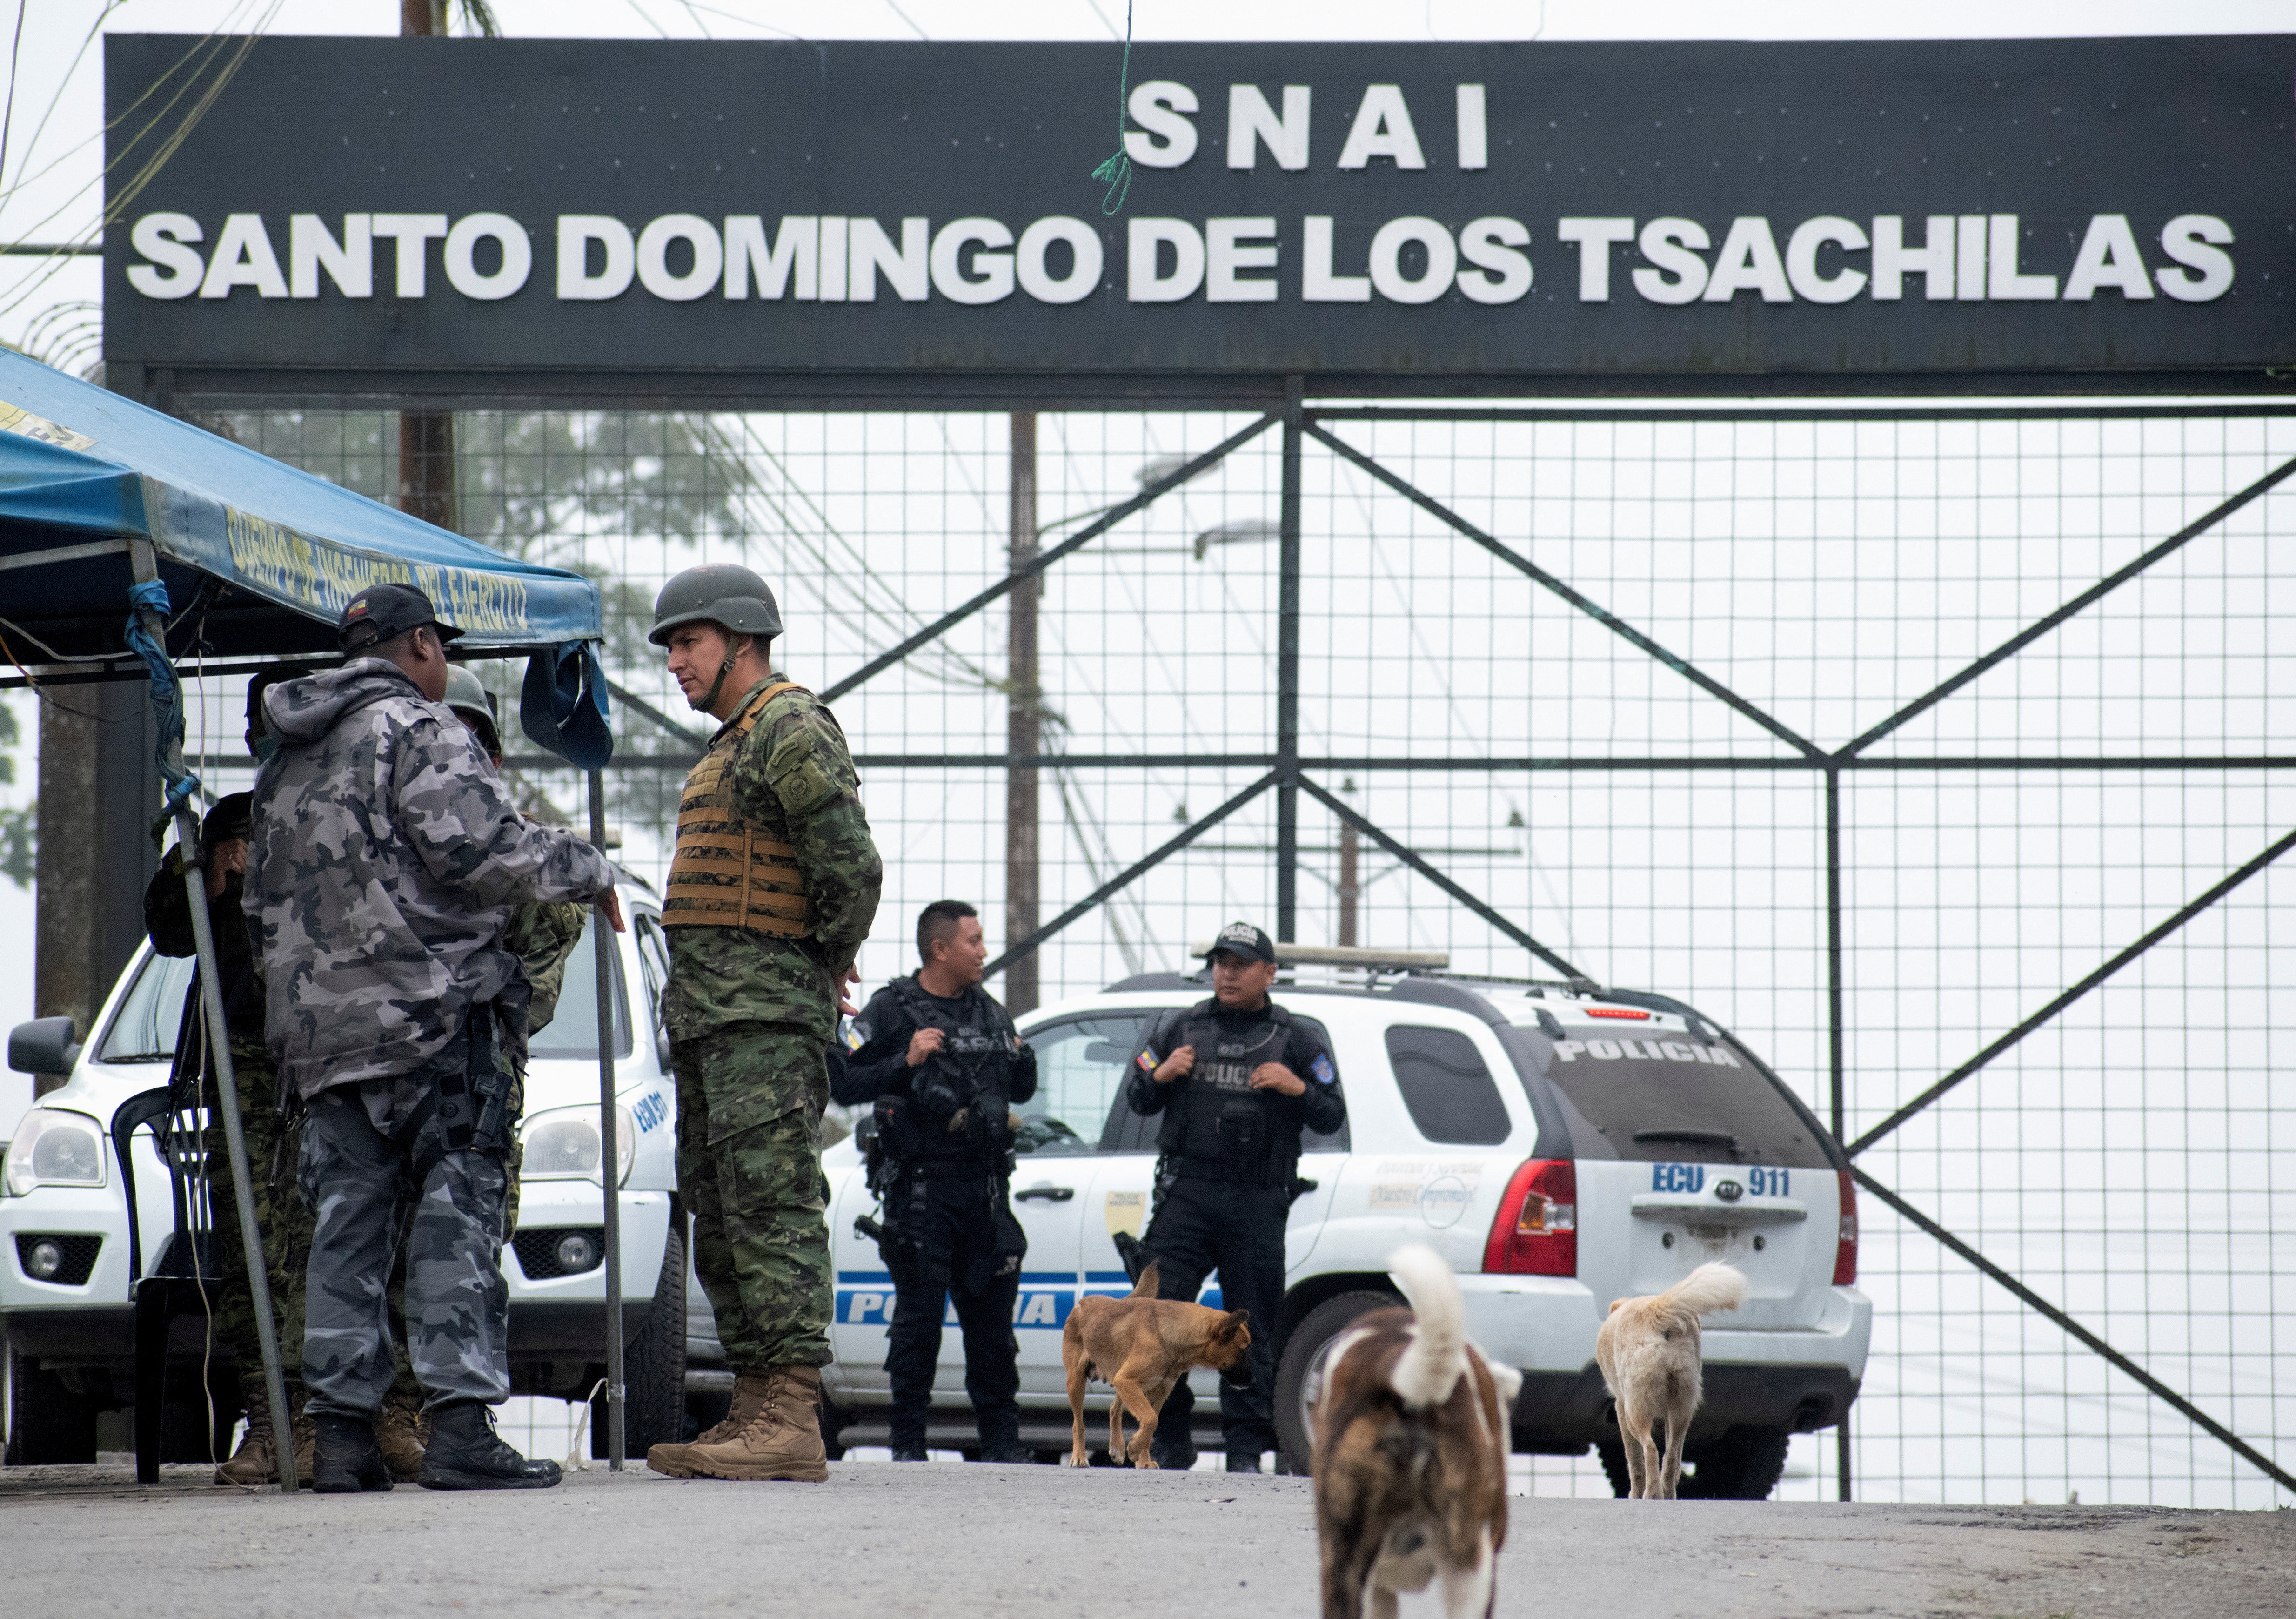 44 presos murieron en la masacre de mayo en la cárcel de Santo Domingo, a 152 kilómetros de Quito. (REUTERS/Tito Correa)